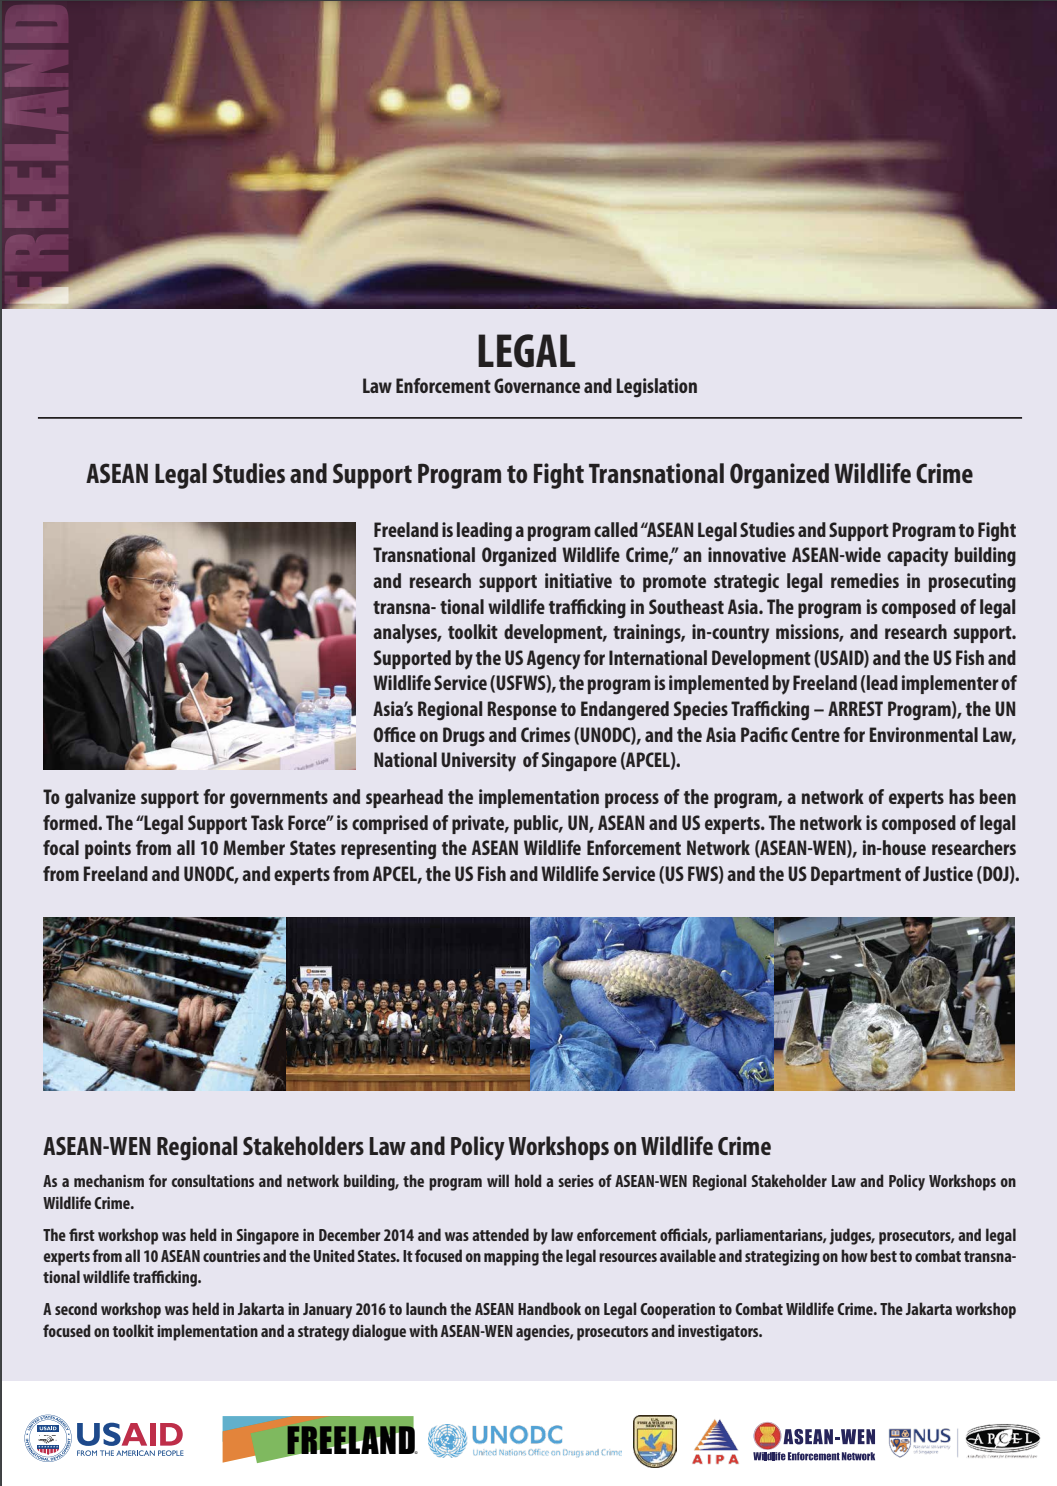 ASEAN WEN Legal Handbook image